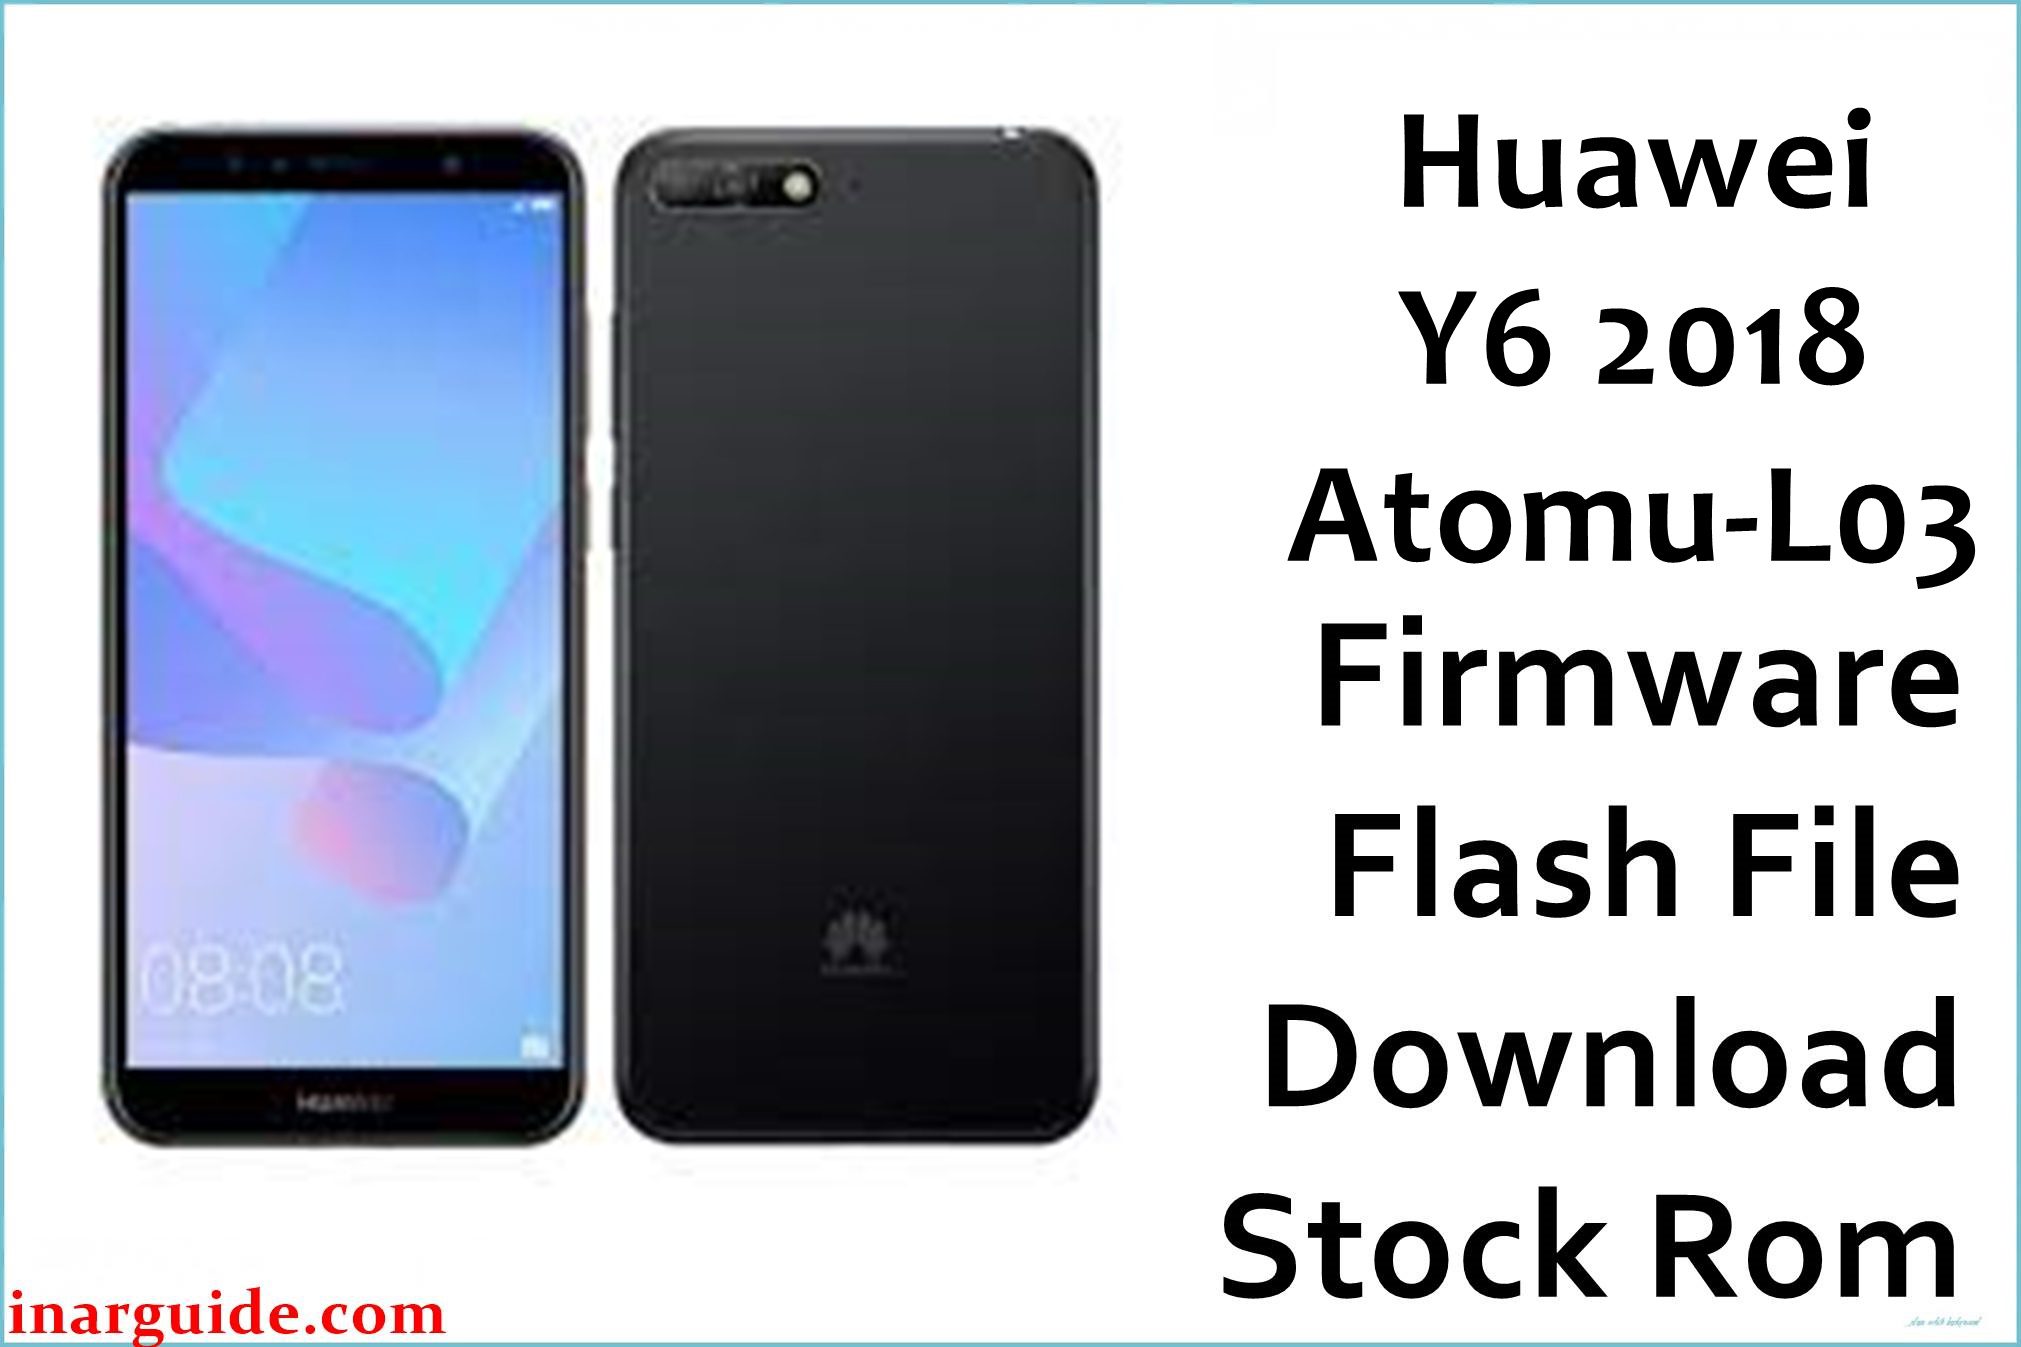 Huawei Y6 2018 Atomu L03